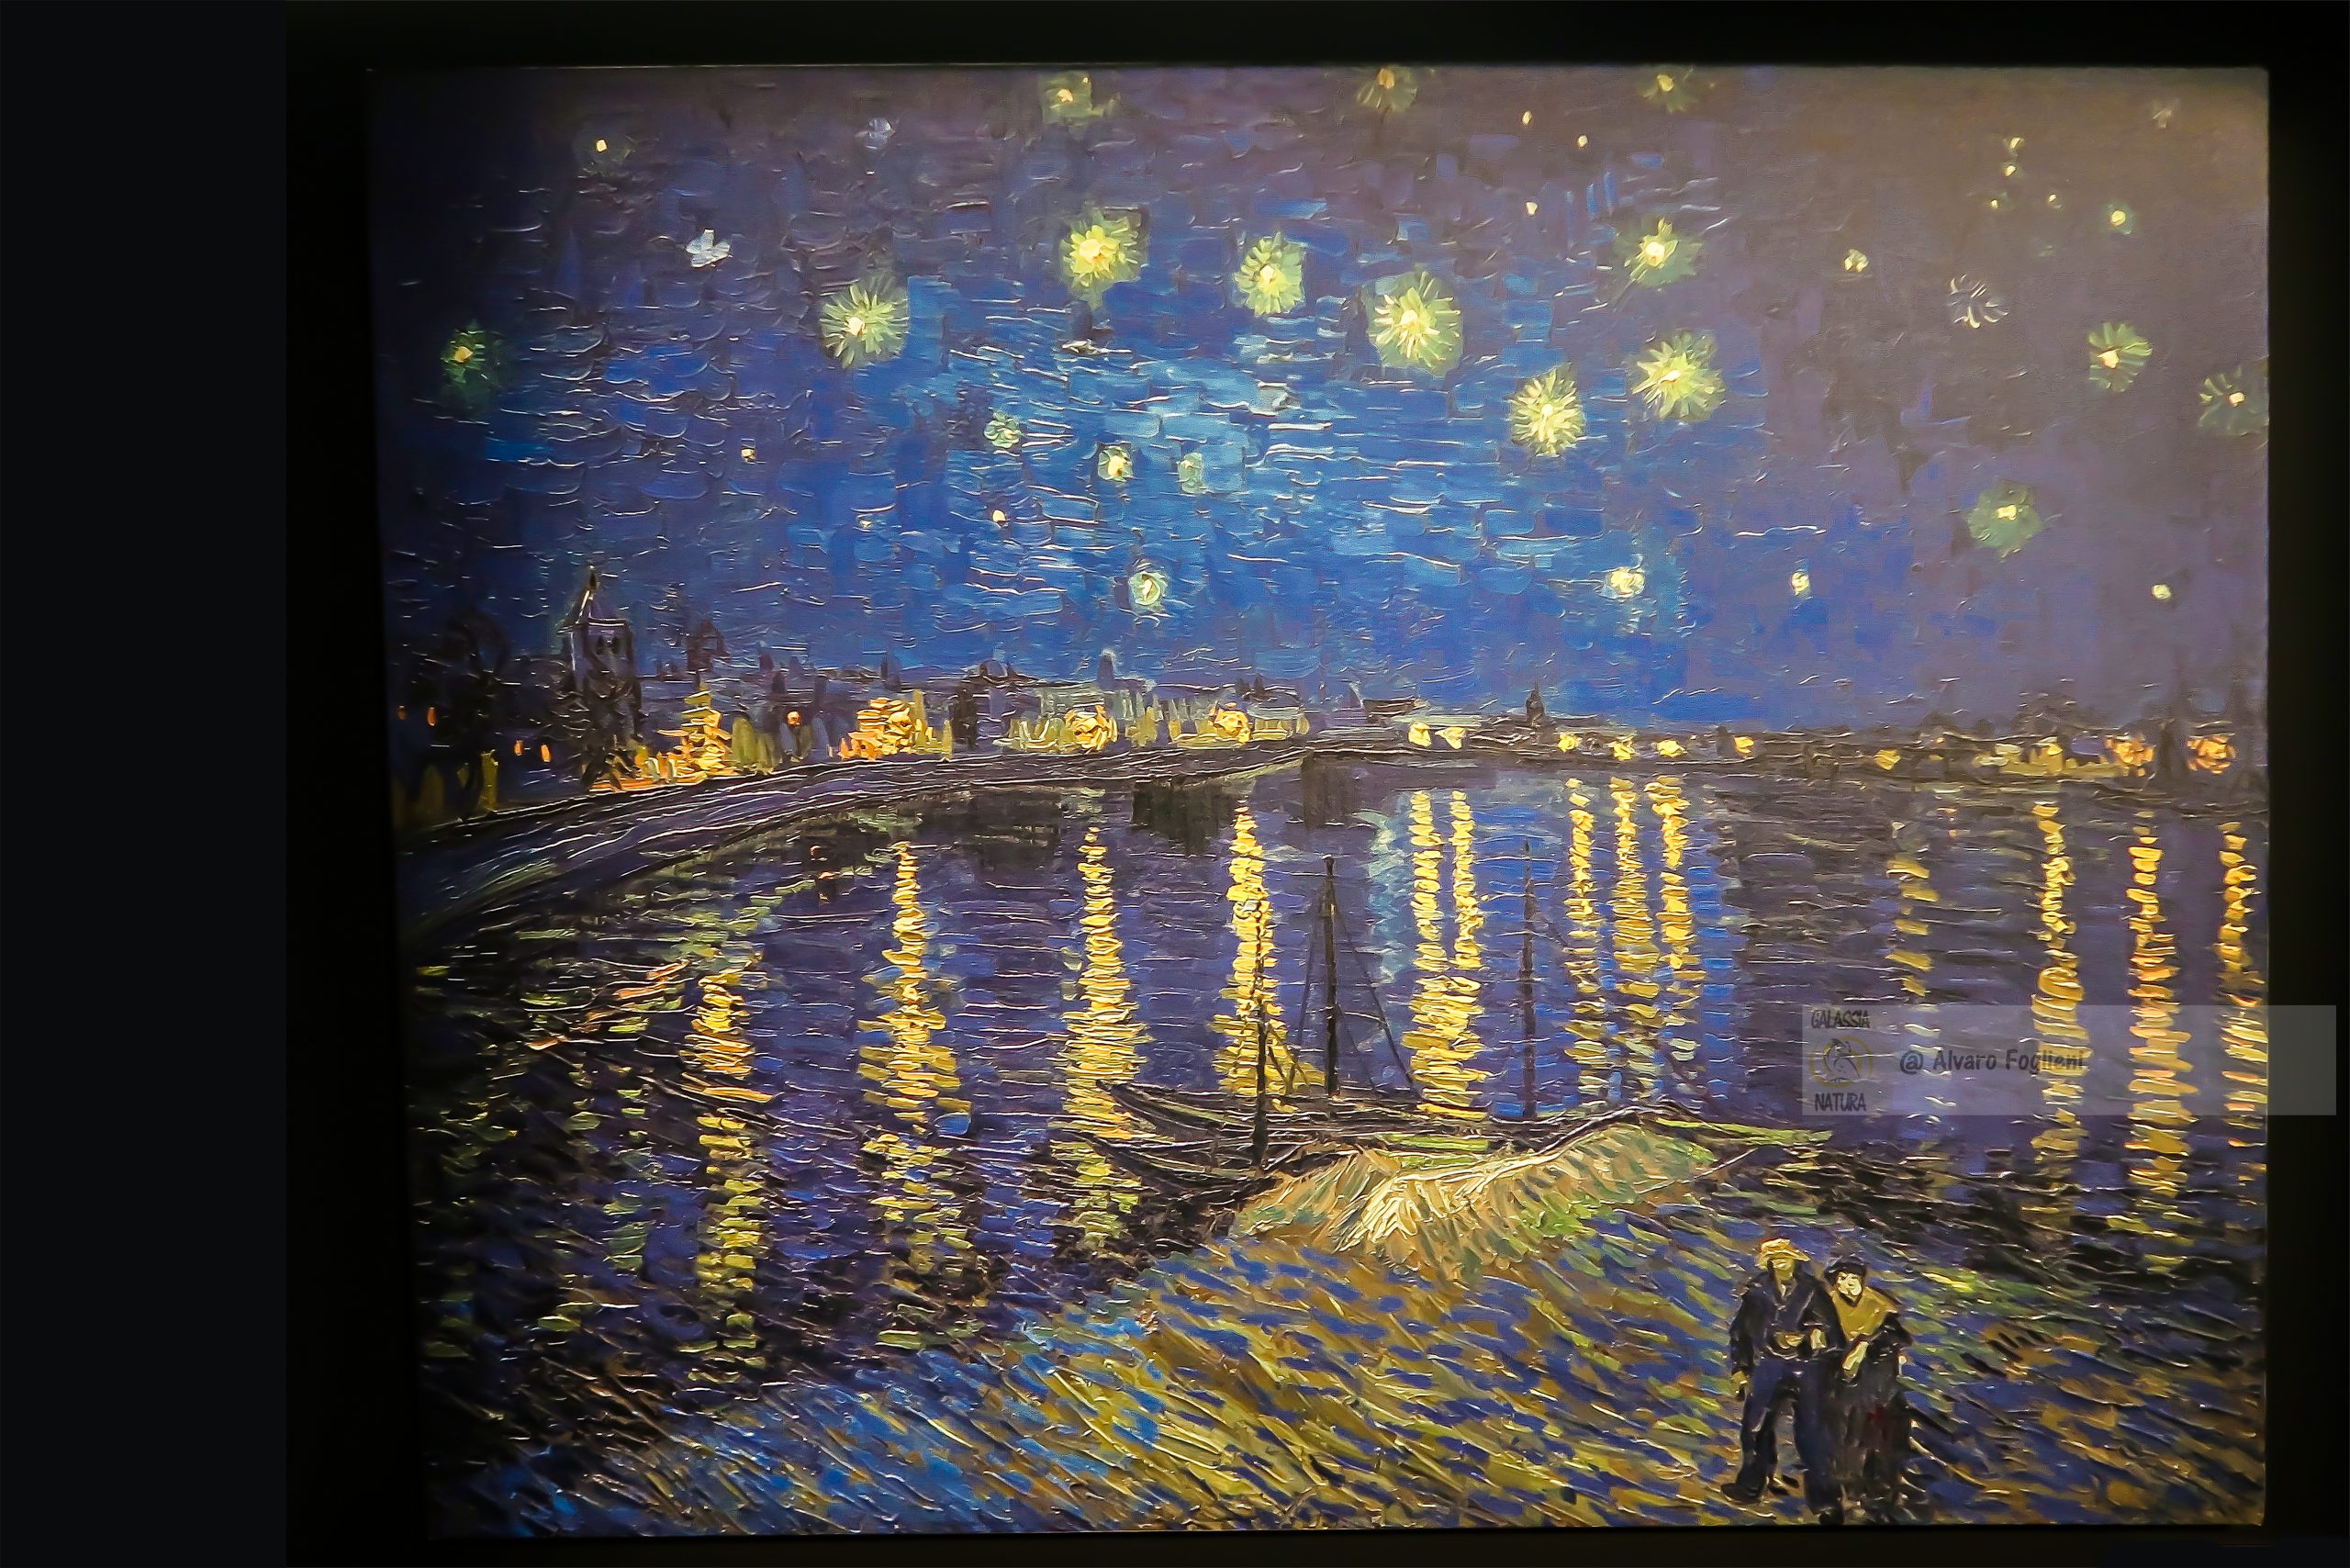 Non arrenderti come Van Gogh: con dedizione la tua arte migliorerà